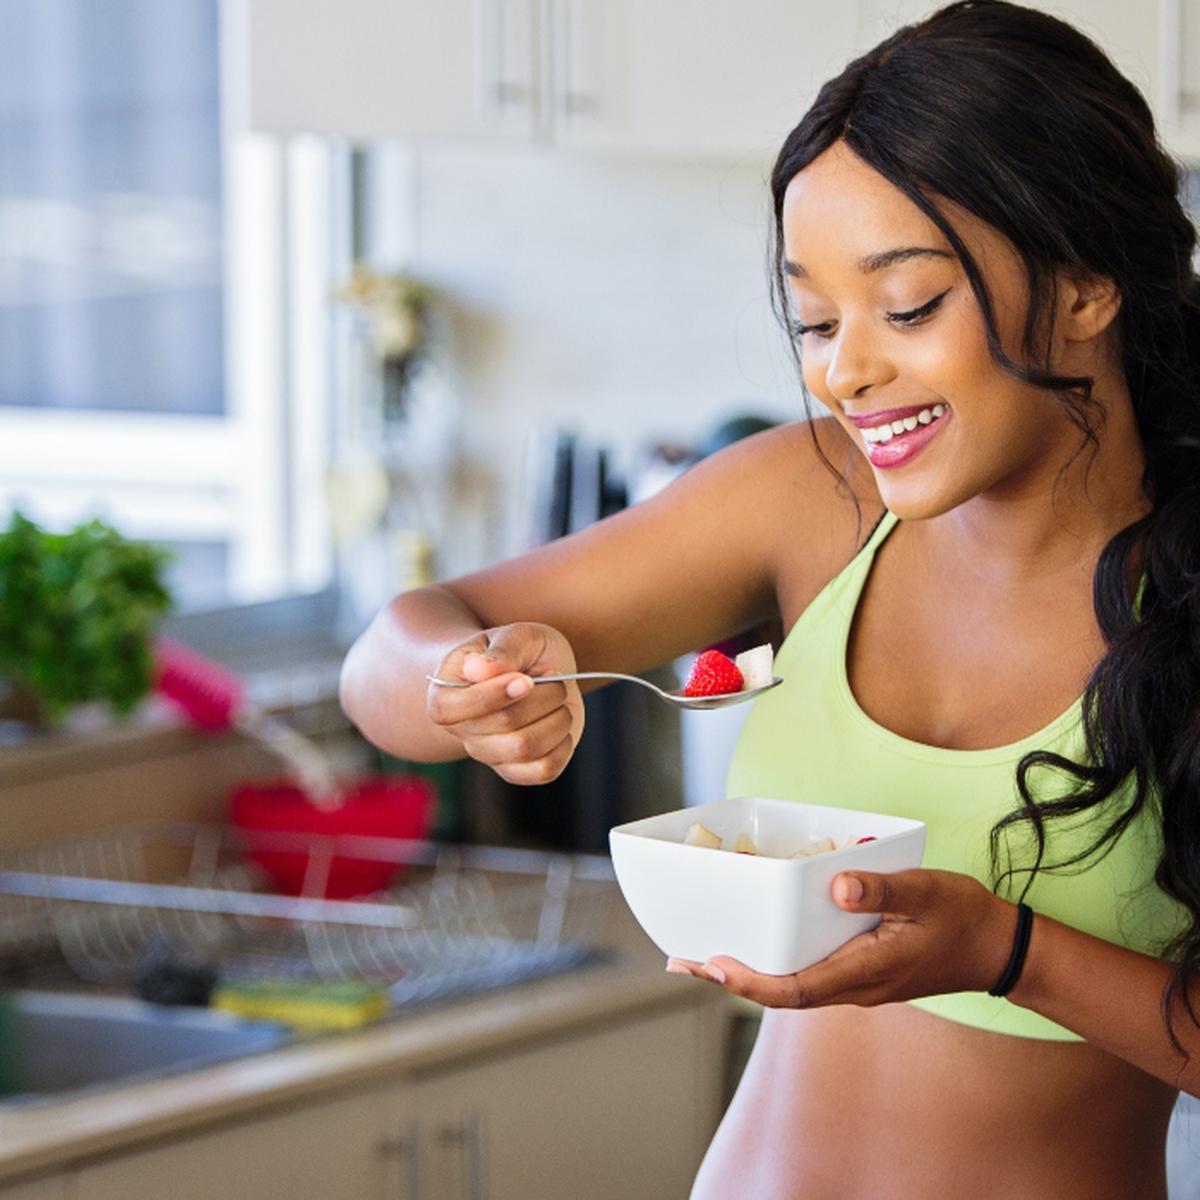 Recetas de desayunos saludables para adelgazar: consejos para bajar de peso  | comida saludable | Alimentación | Vida sana | Estilo de vida | VIDA-SANA  | DEPOR